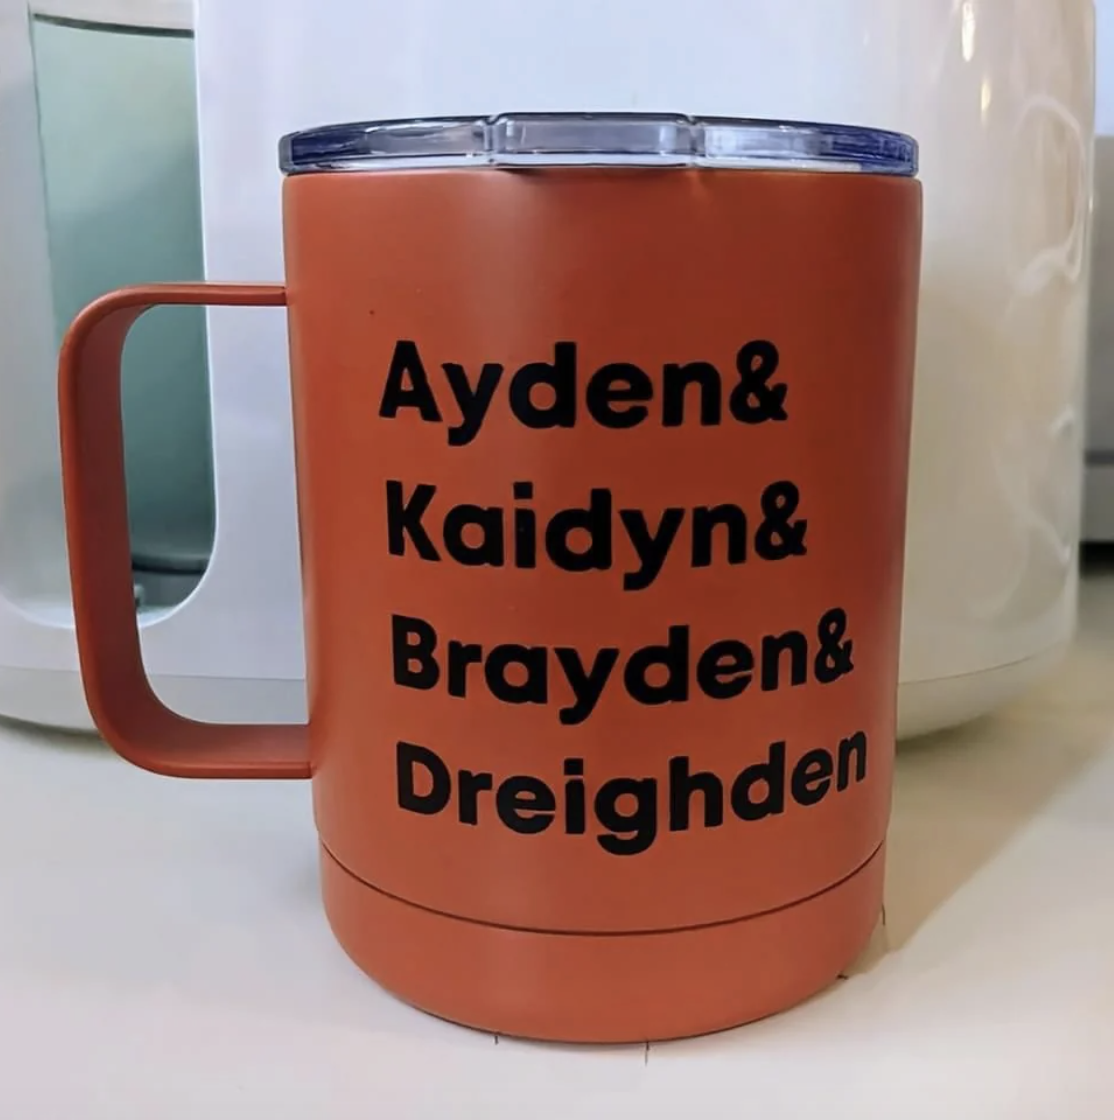 Ayden, Kaidyn, Brayden, and Dreighden